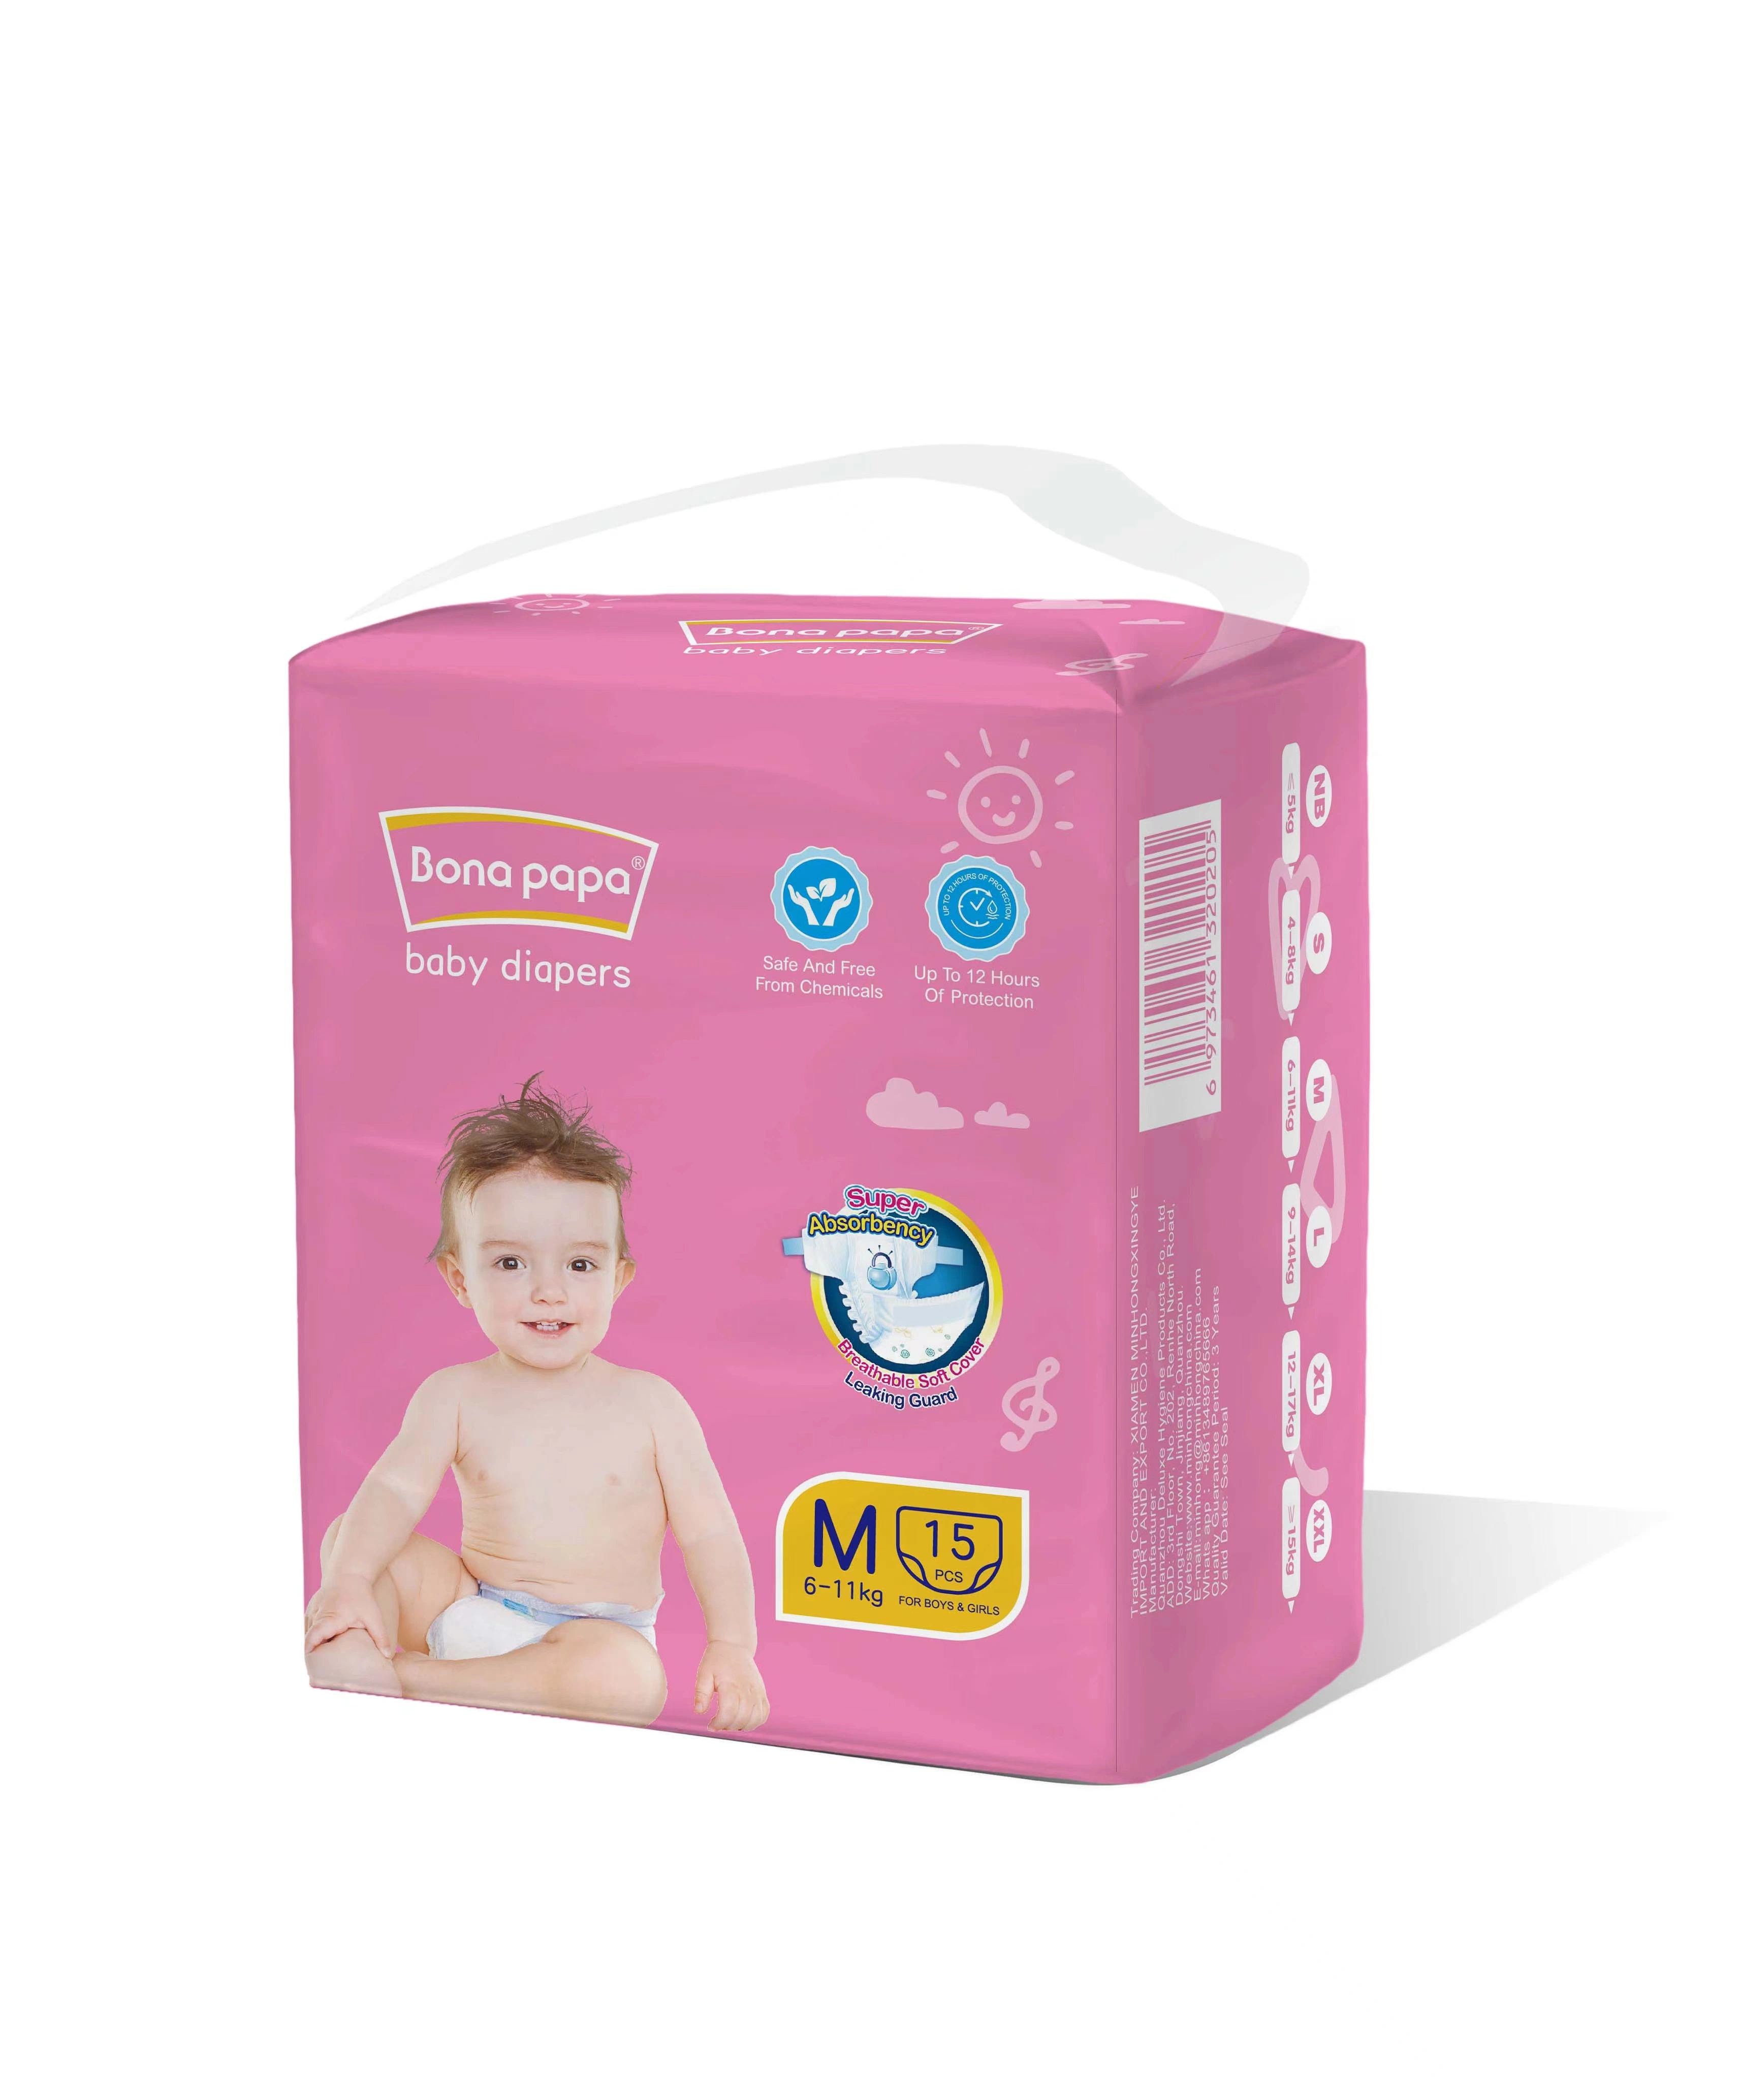 Venta al por mayor calidad Premium Ultra suave Alta absorción barata Precio Cuidado transpirable bebé cómodo pañal pañal artículos de pañales hechos en China